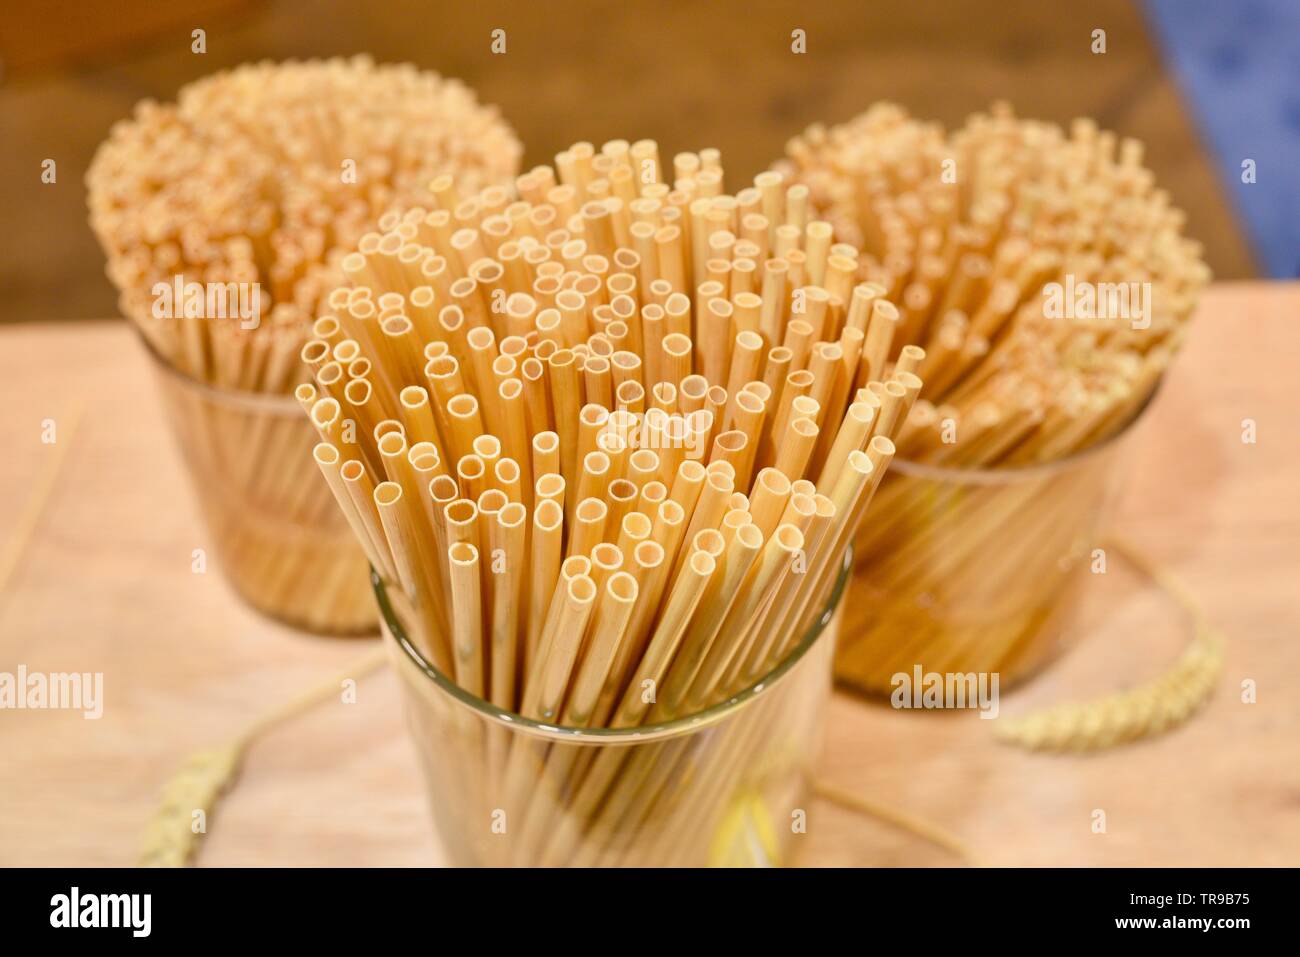 Assortiment de pailles naturel fabriqué à partir de tiges de blé dans les pots à l'affiche au stand de paille foin au niveau National Restaurant Association Show qui a eu lieu à Chicago, IL, USA Banque D'Images